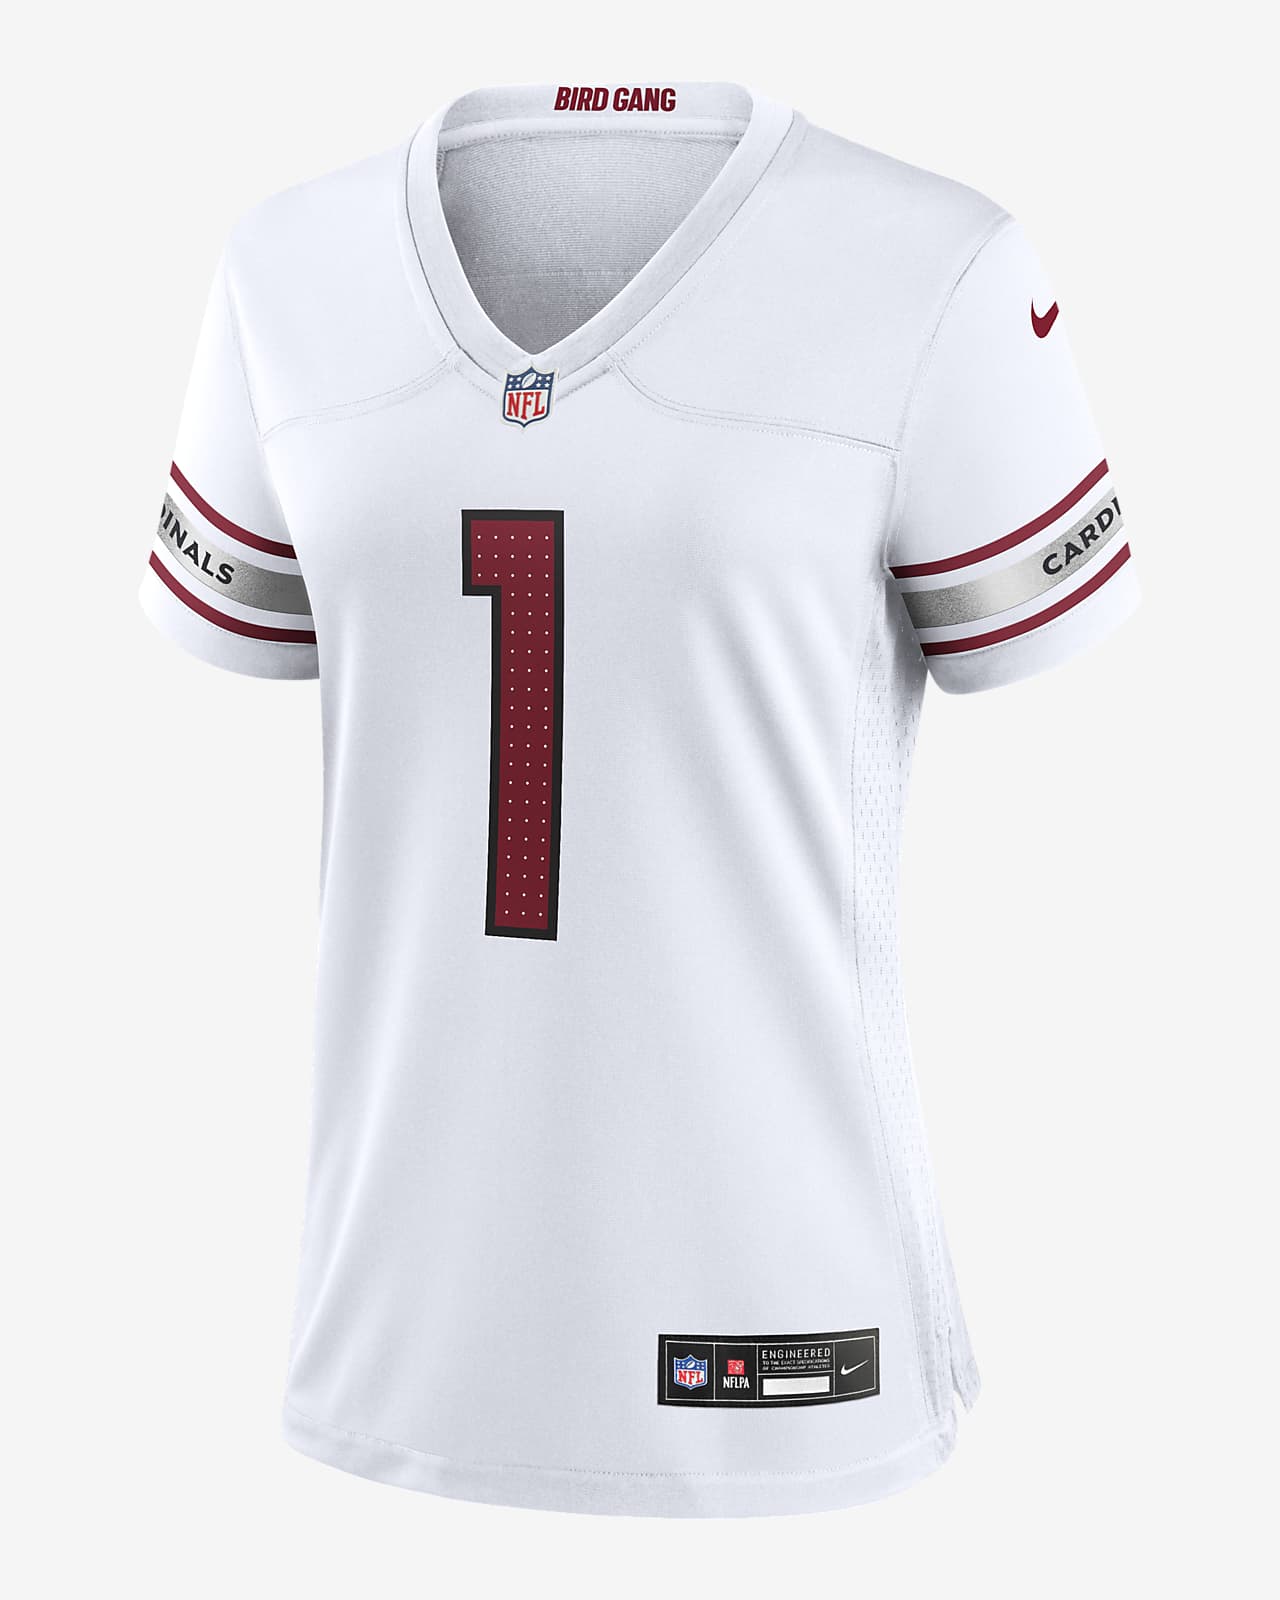 Kyler Murray Arizona Cardinals Women's Nike NFL Game Football Jersey